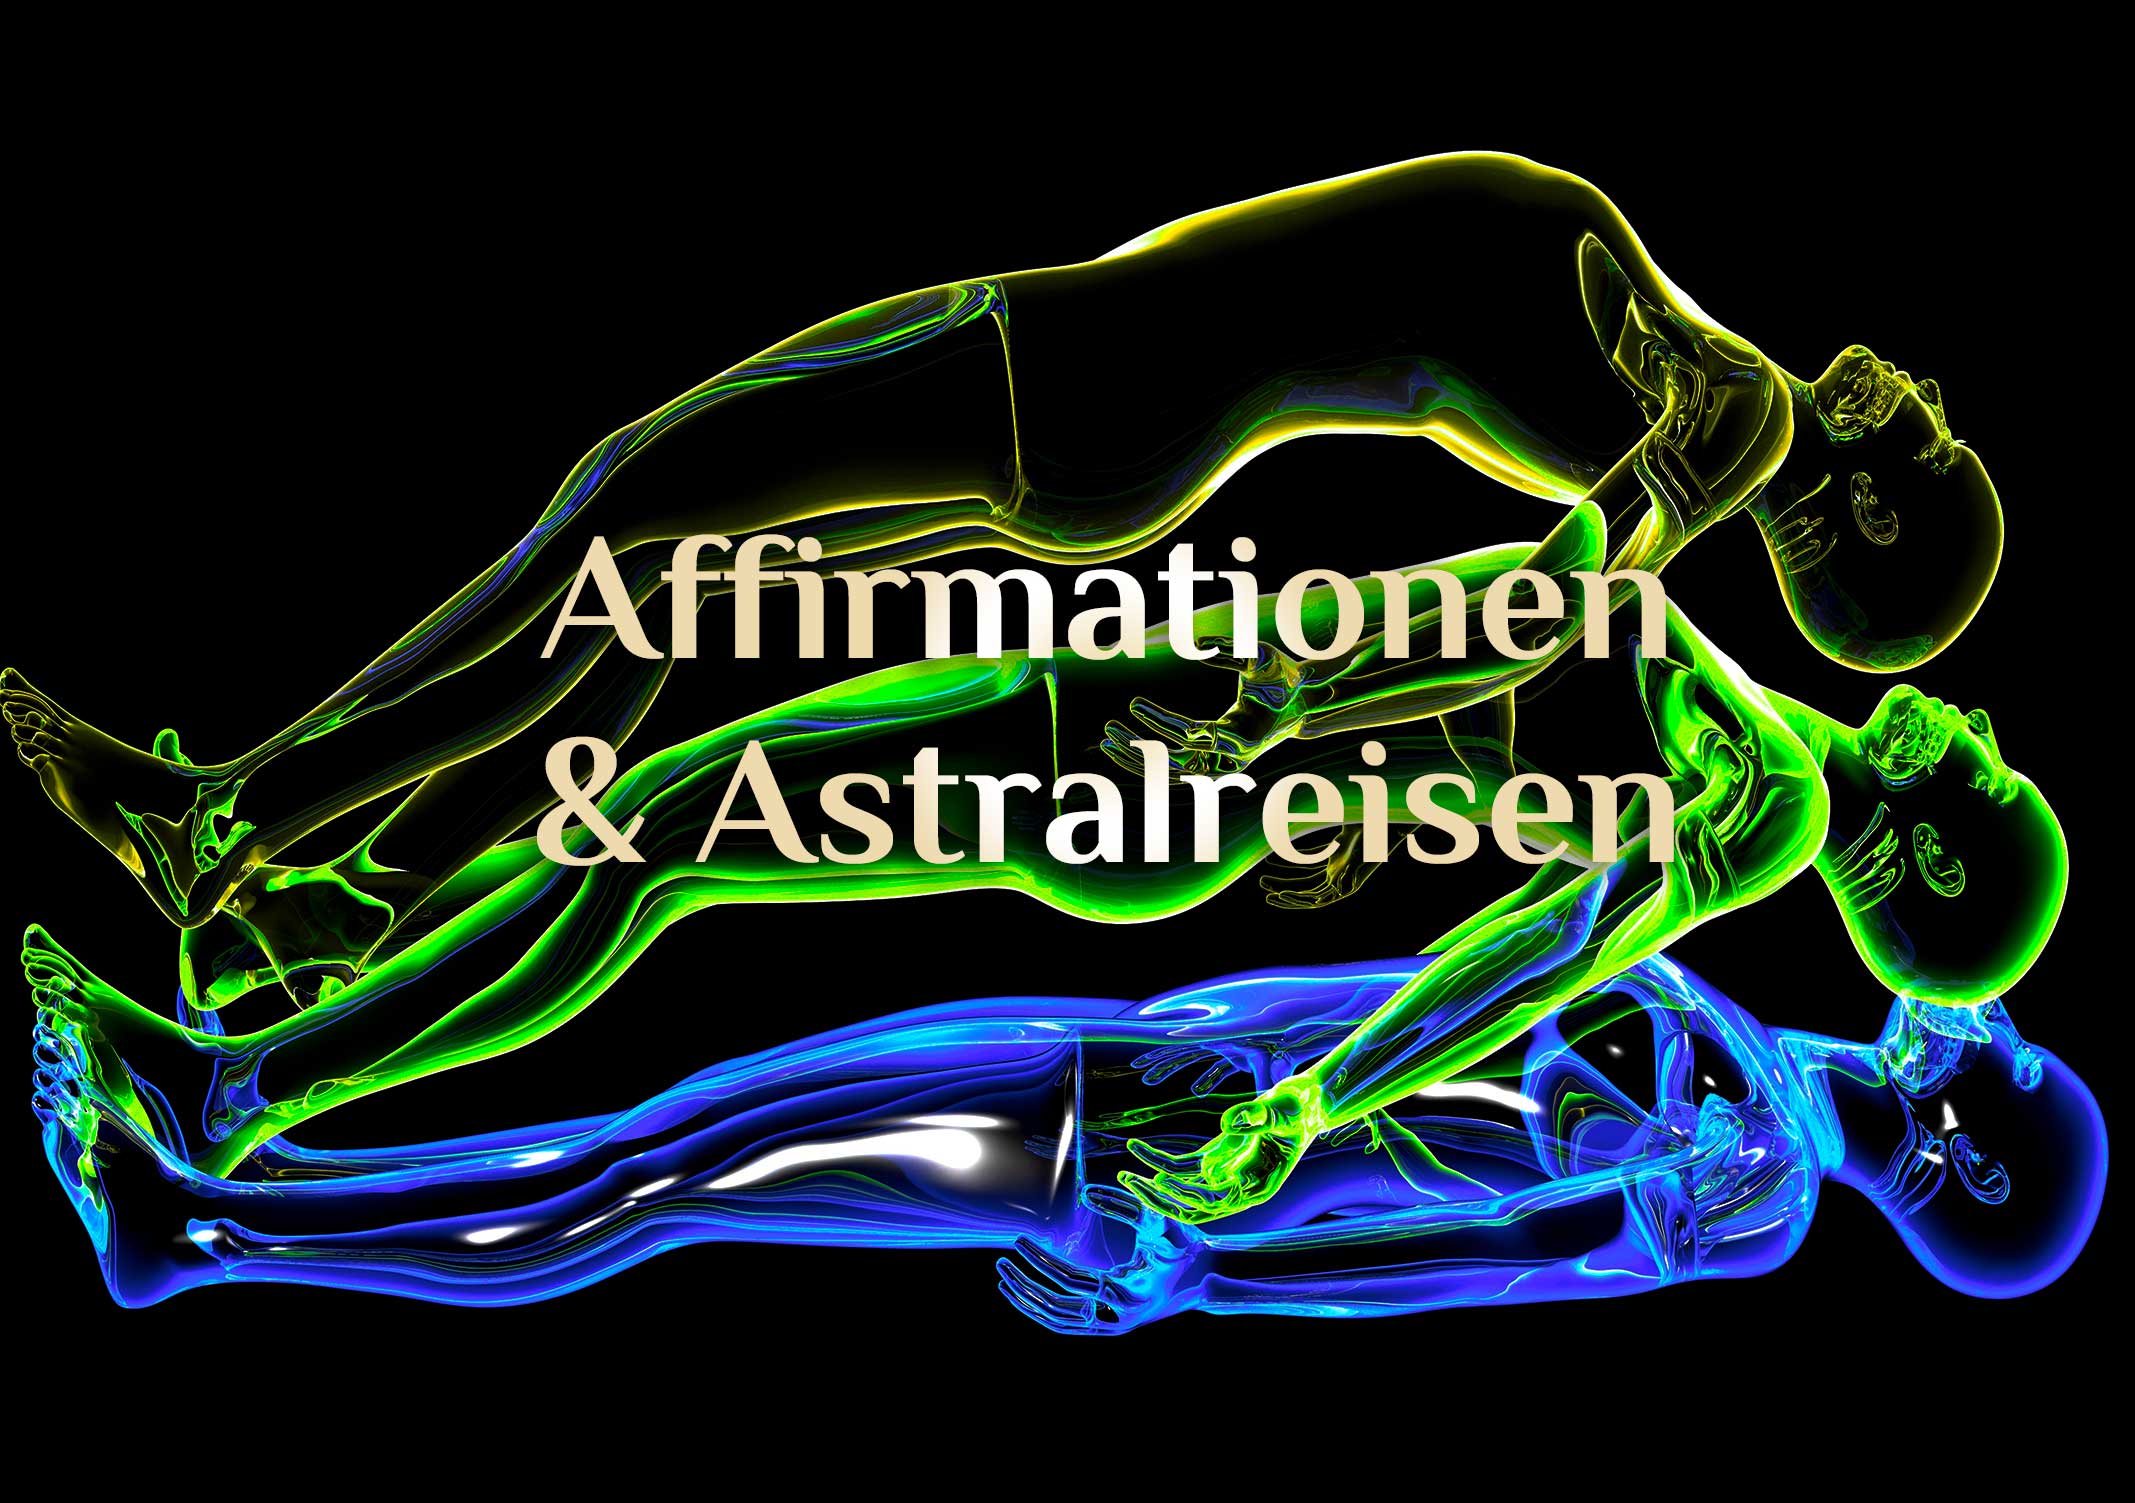 Astralreisen & Affirmationen 💫 Affirmationen zur Astralreise